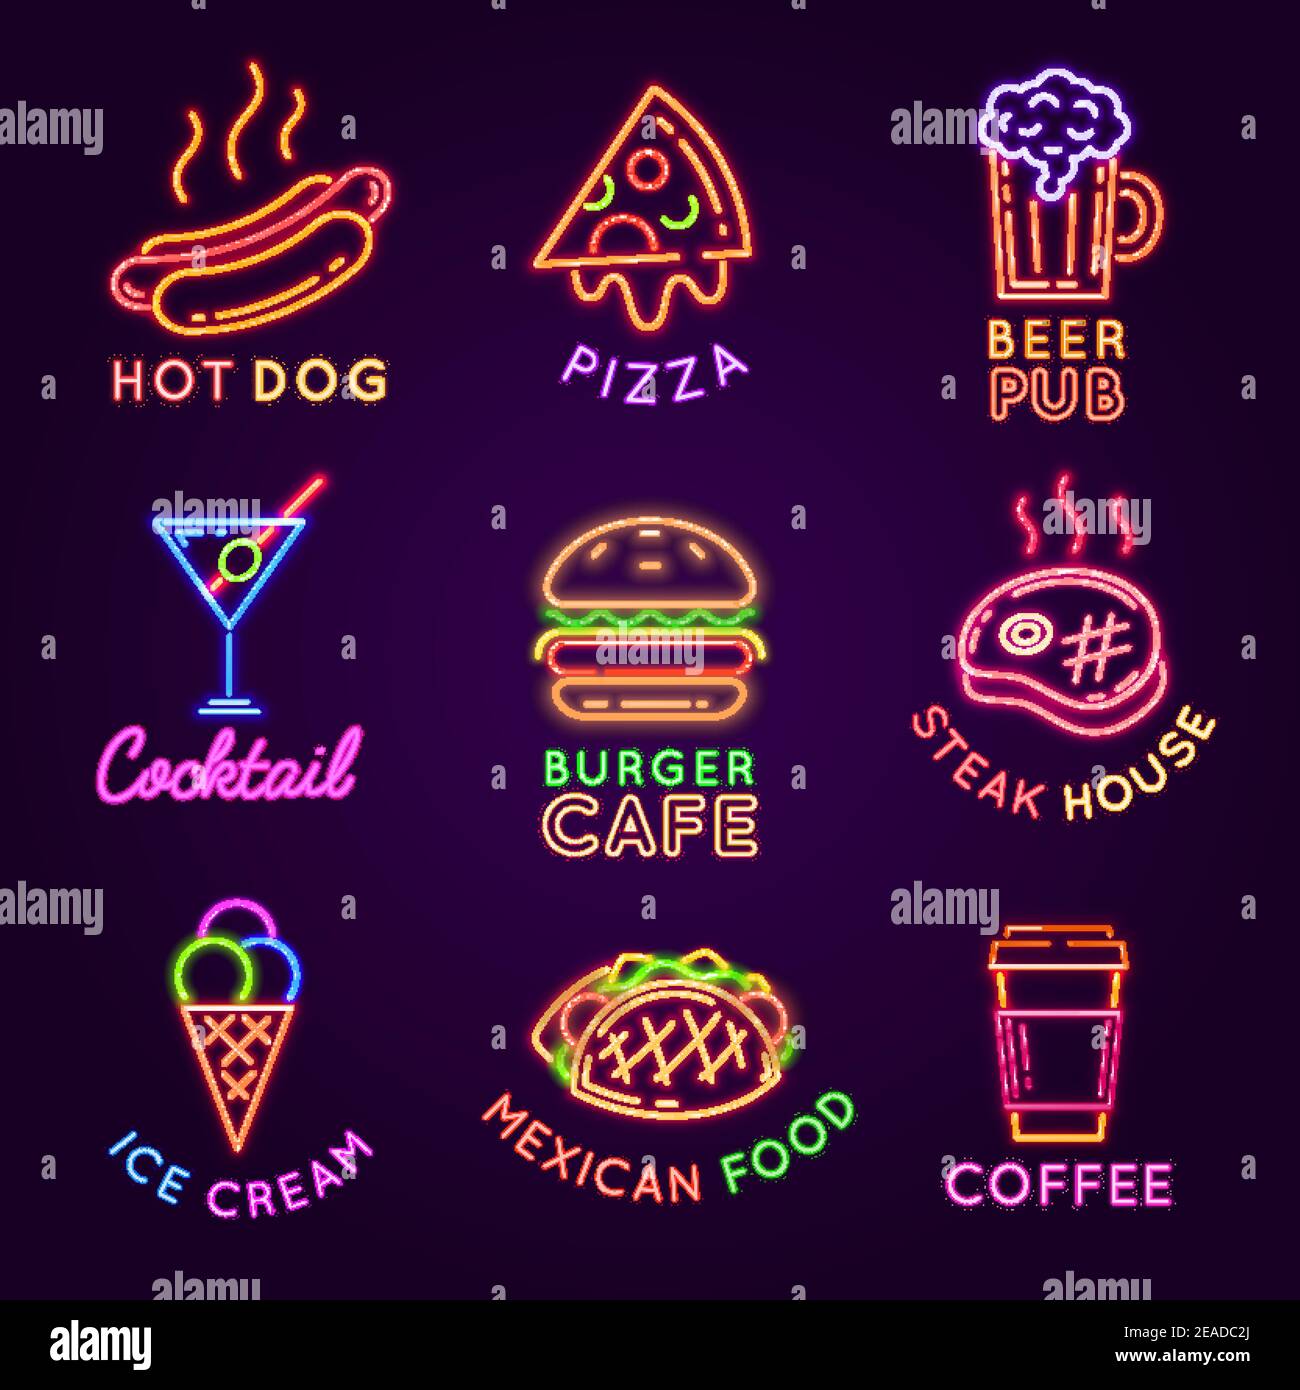 Cafe Neonschilder. Essen und Trinken Leuchtende Werbetafeln. Burger und Pizza Restaurant, Bier Pub, Steak House und Kaffee Bar Zeichen Vektor-Set Stock Vektor